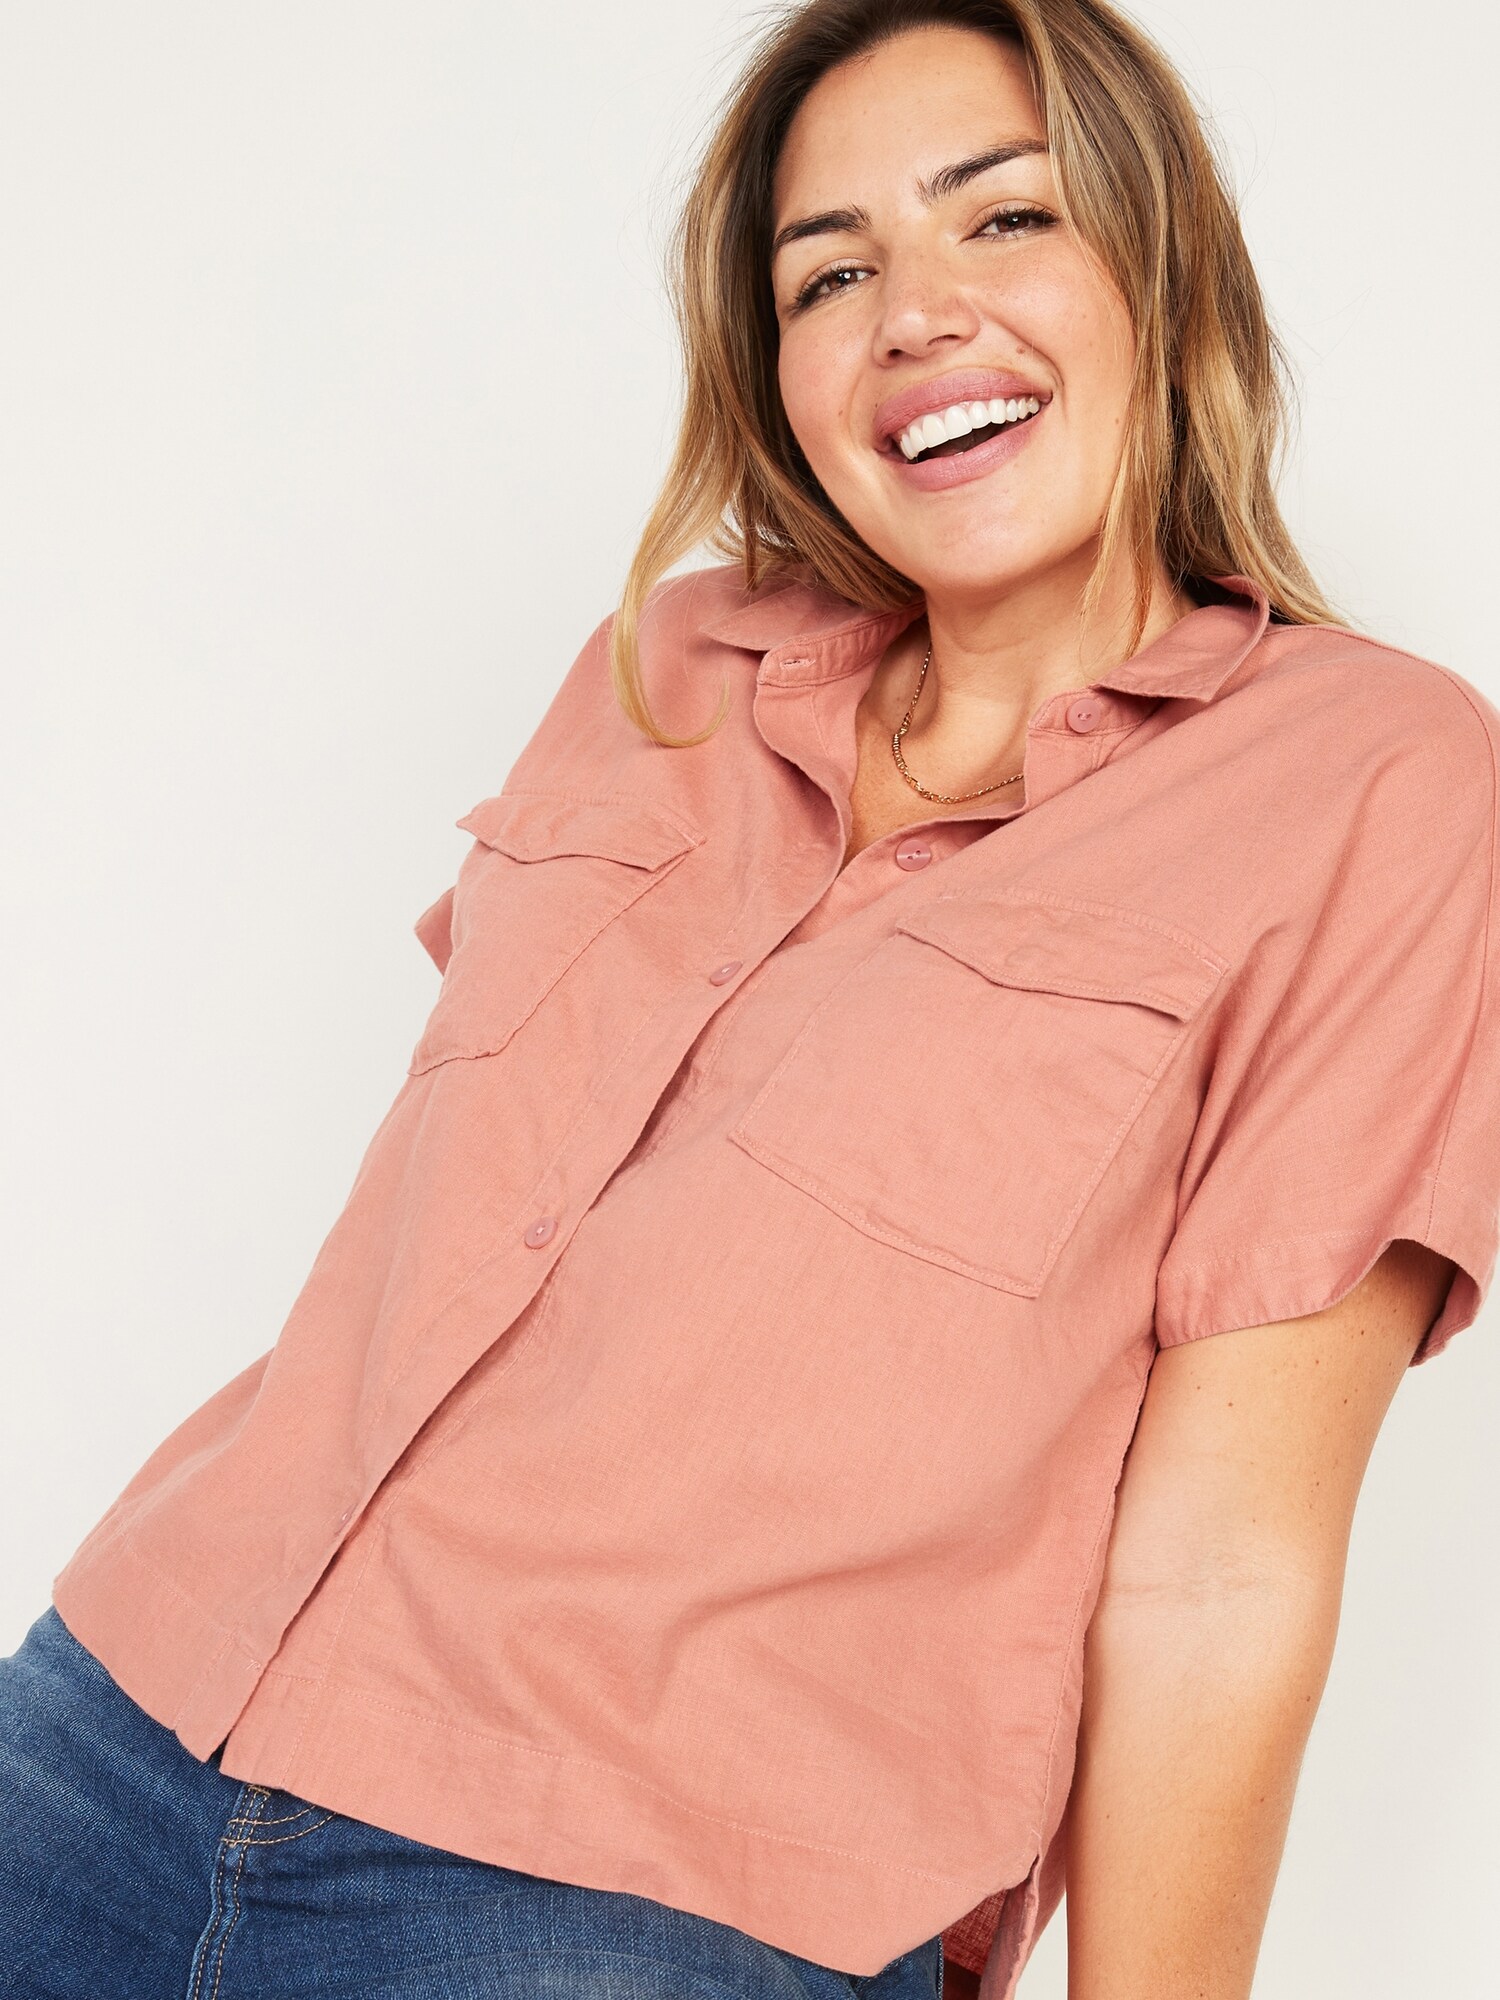 Linen-blend short-sleeve shirt - Women